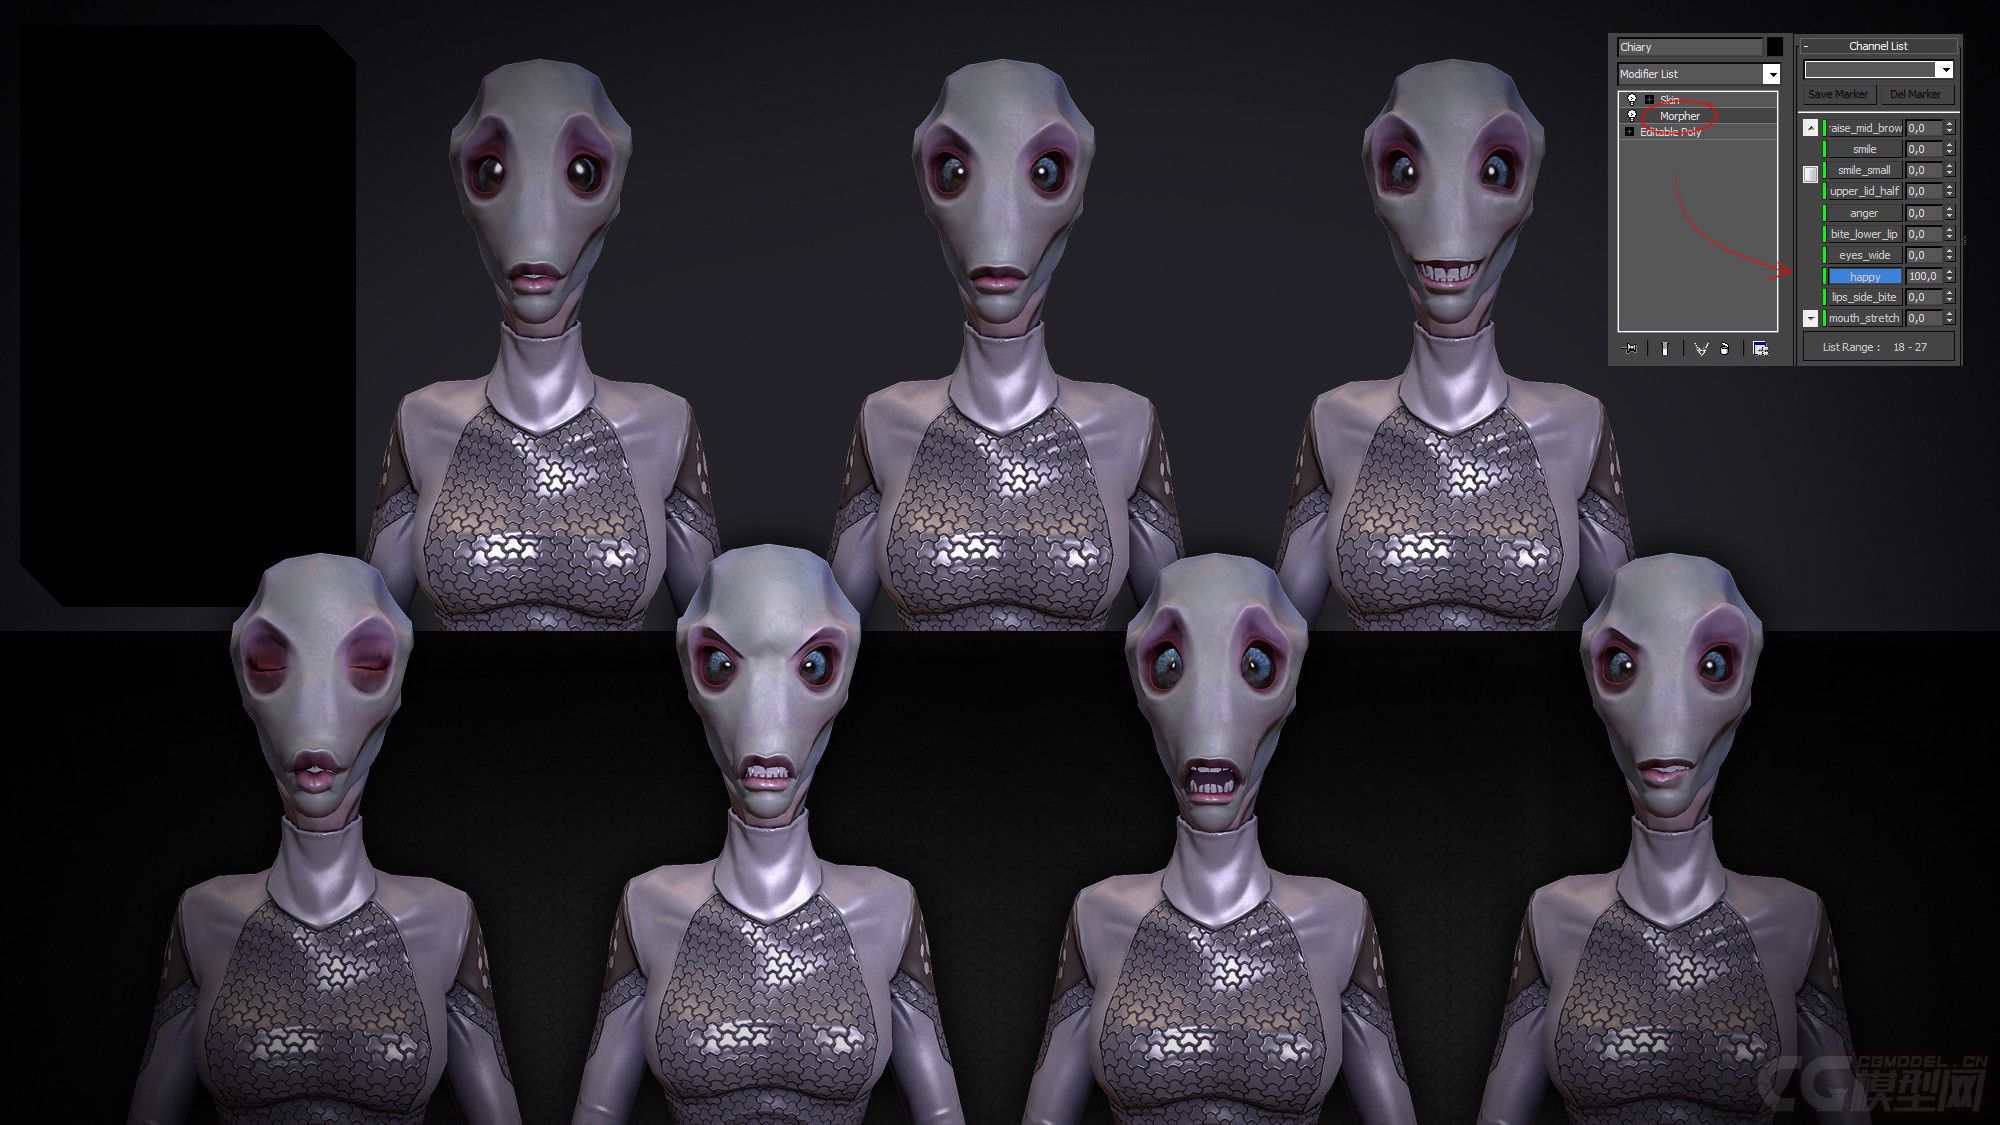 次时代女外星人 未来人类 科幻 战士-cg模型免费下载-CG99